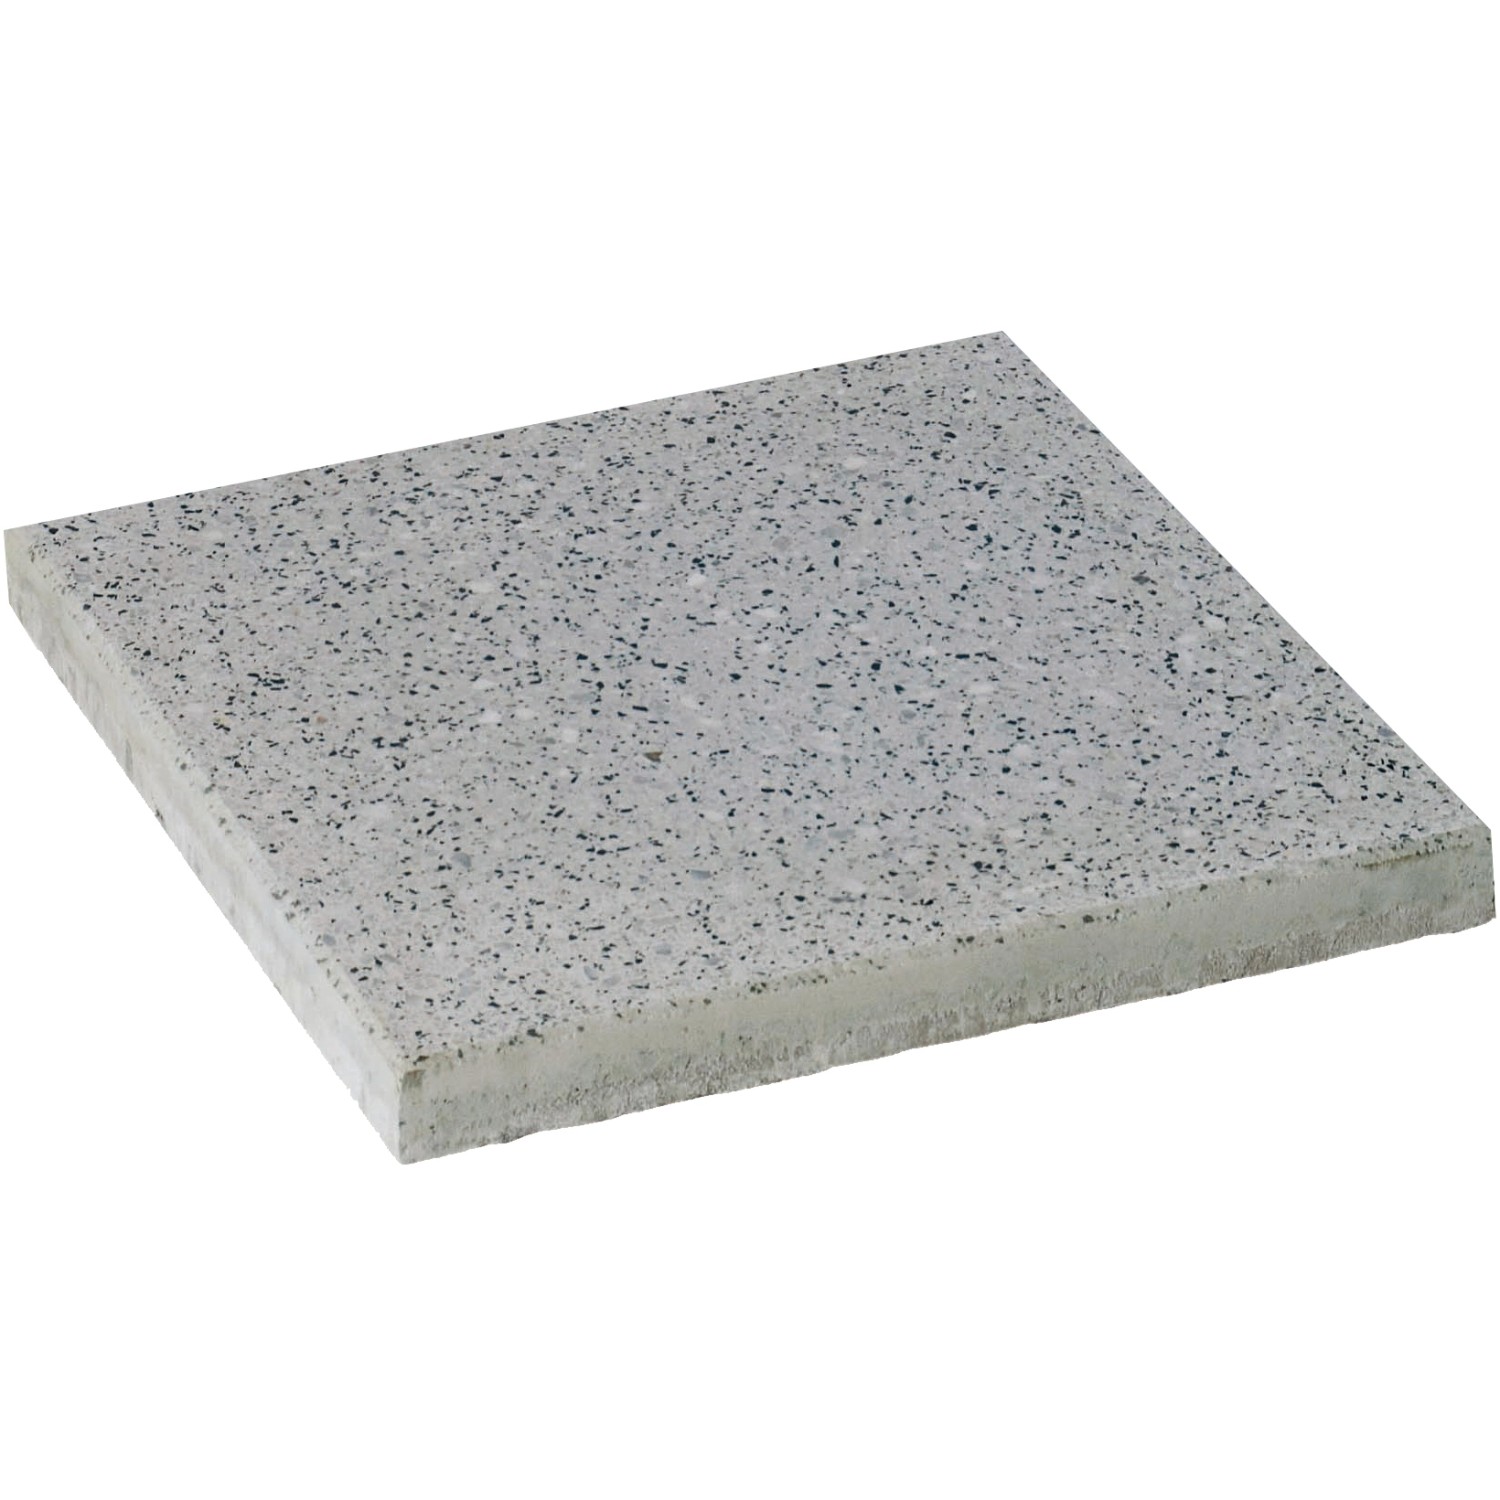 Diephaus Terrassenplatte Mirador armiert Granit-hell 40 x 40 x 4 cm